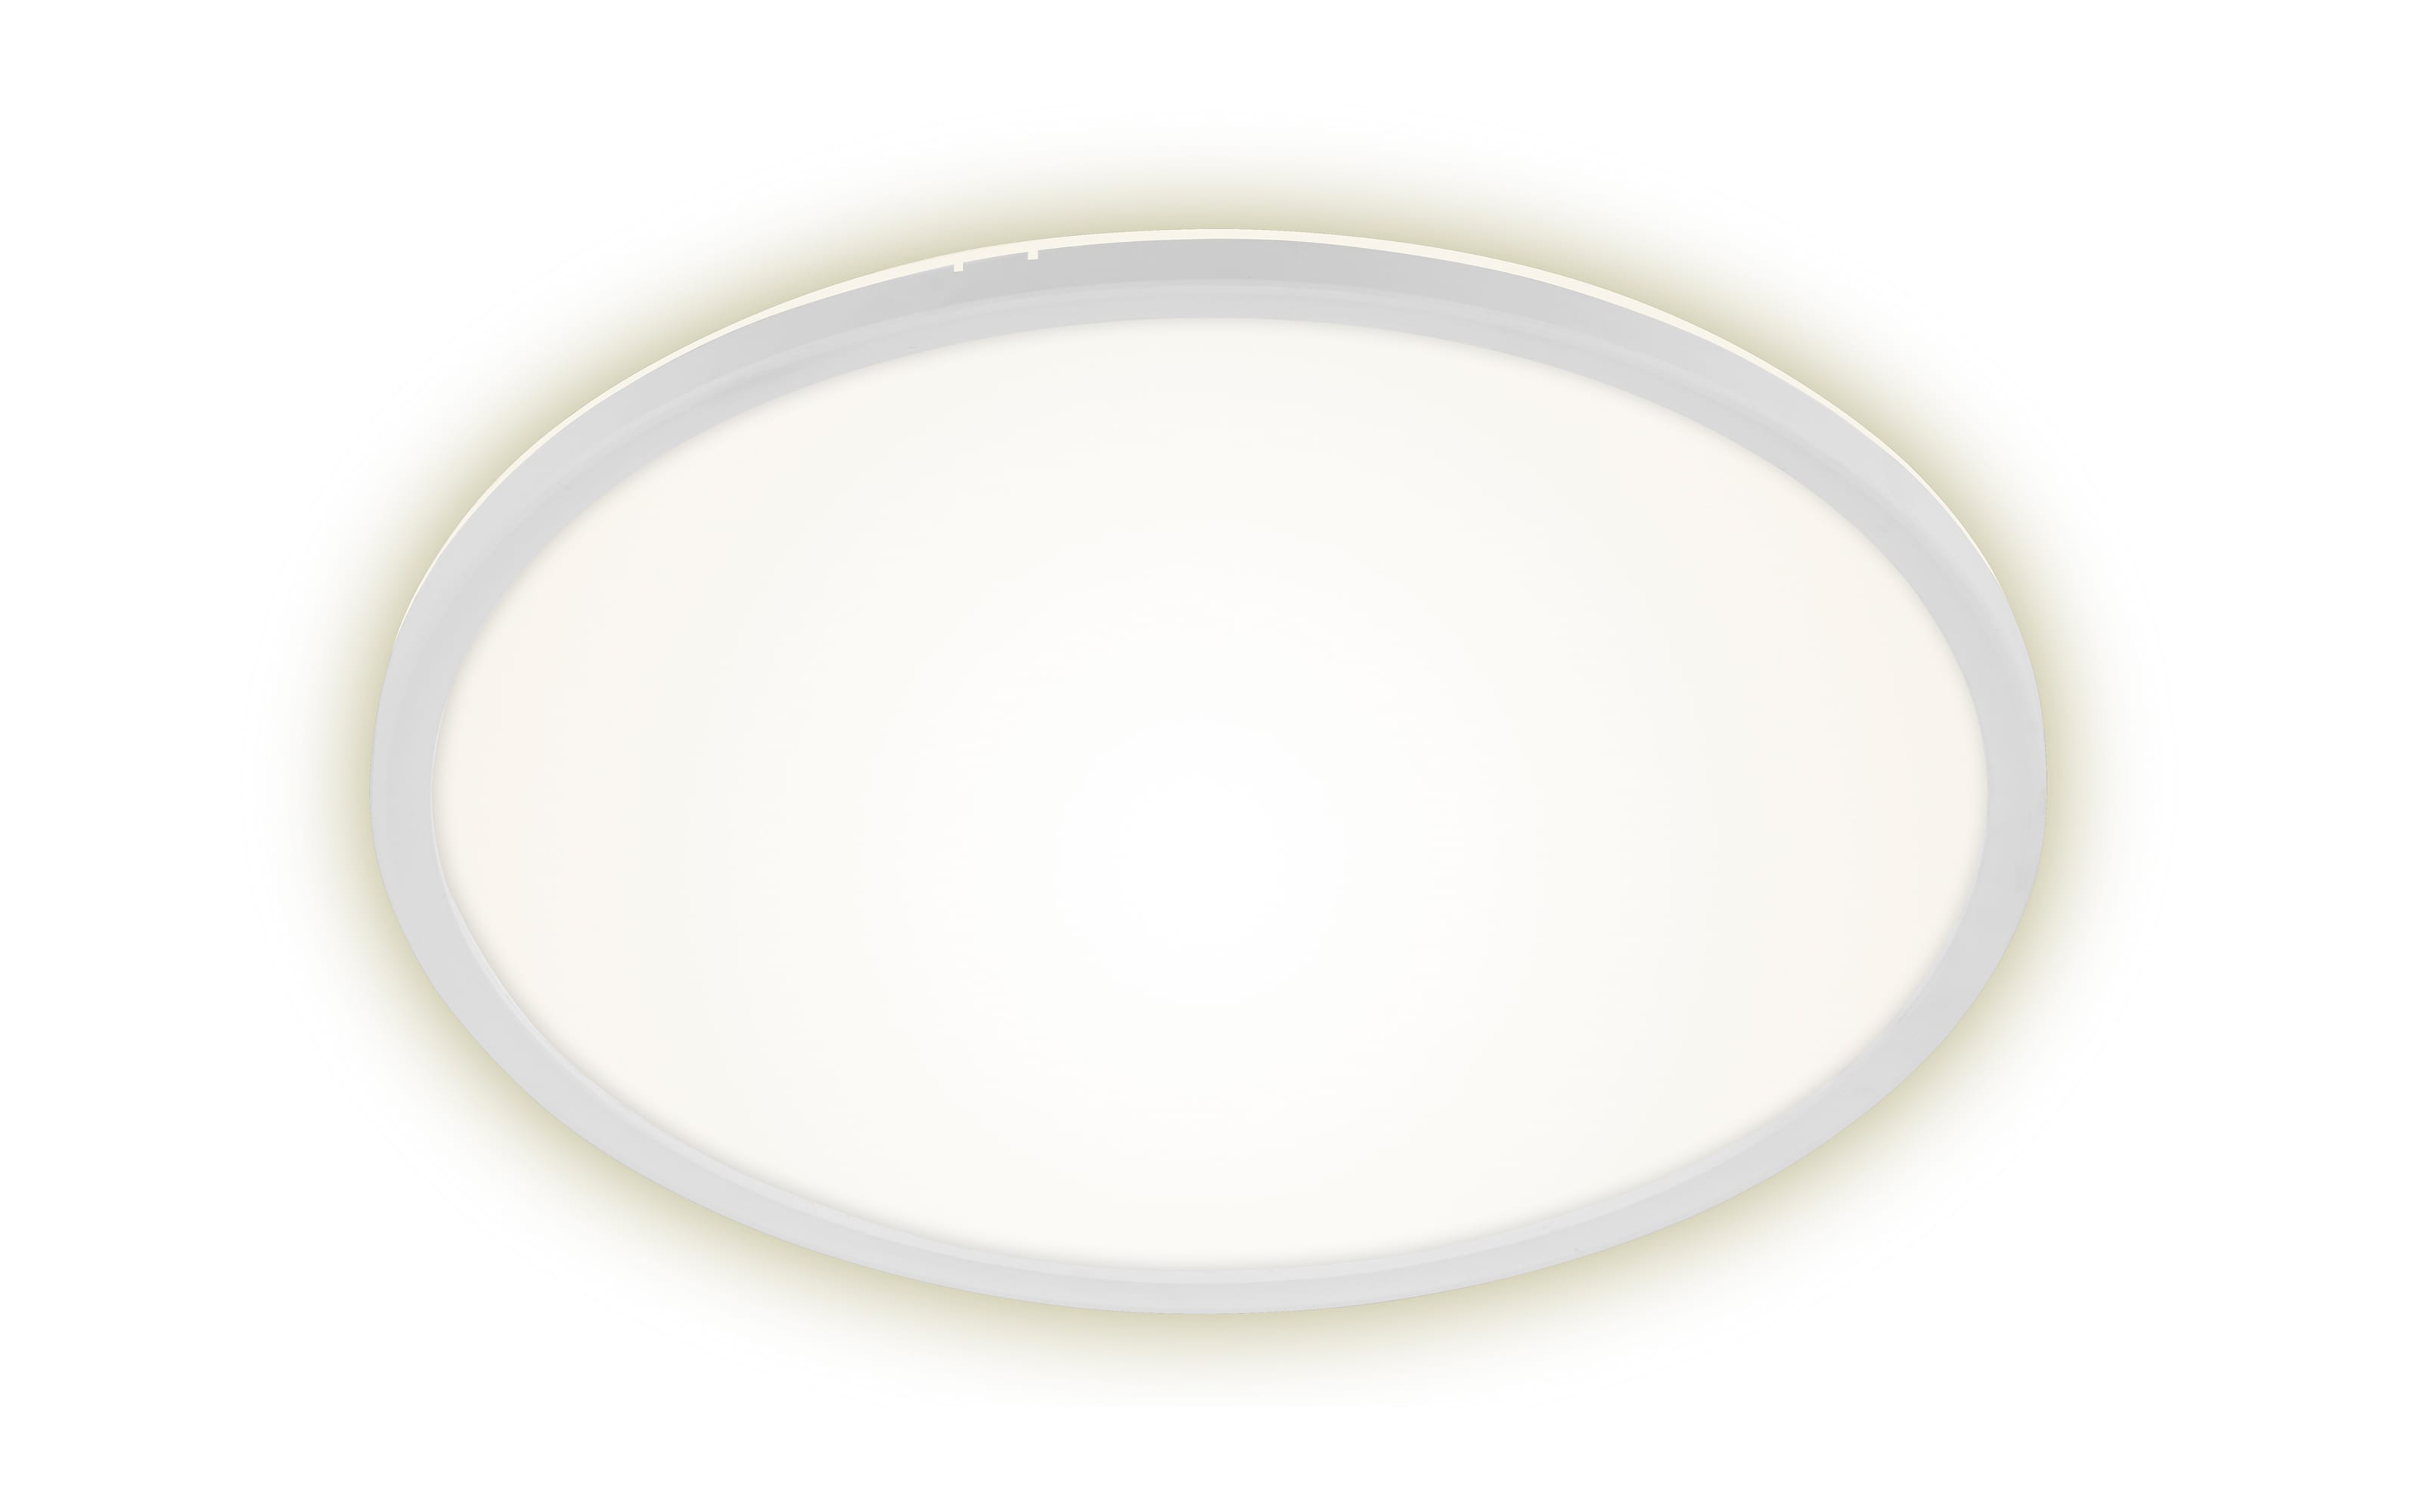 LED-Deckenleuchte Slim, weiß, 42 cm